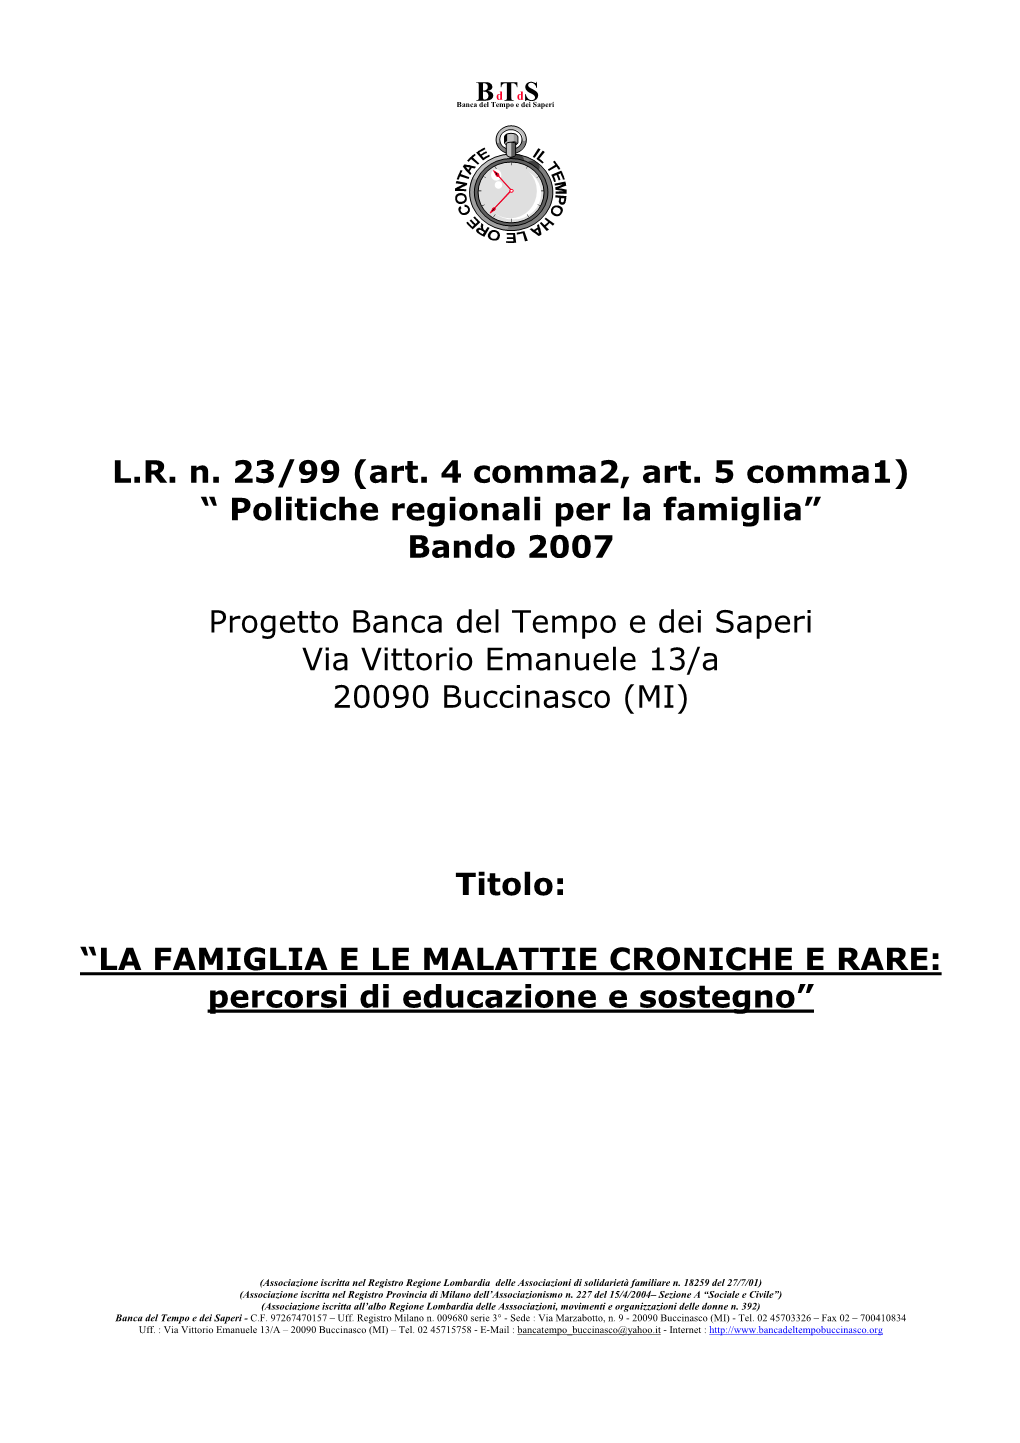 (Art. 4 Comma2, Art. 5 Comma1) “ Politiche Regionali Per La Famiglia” Bando 2007